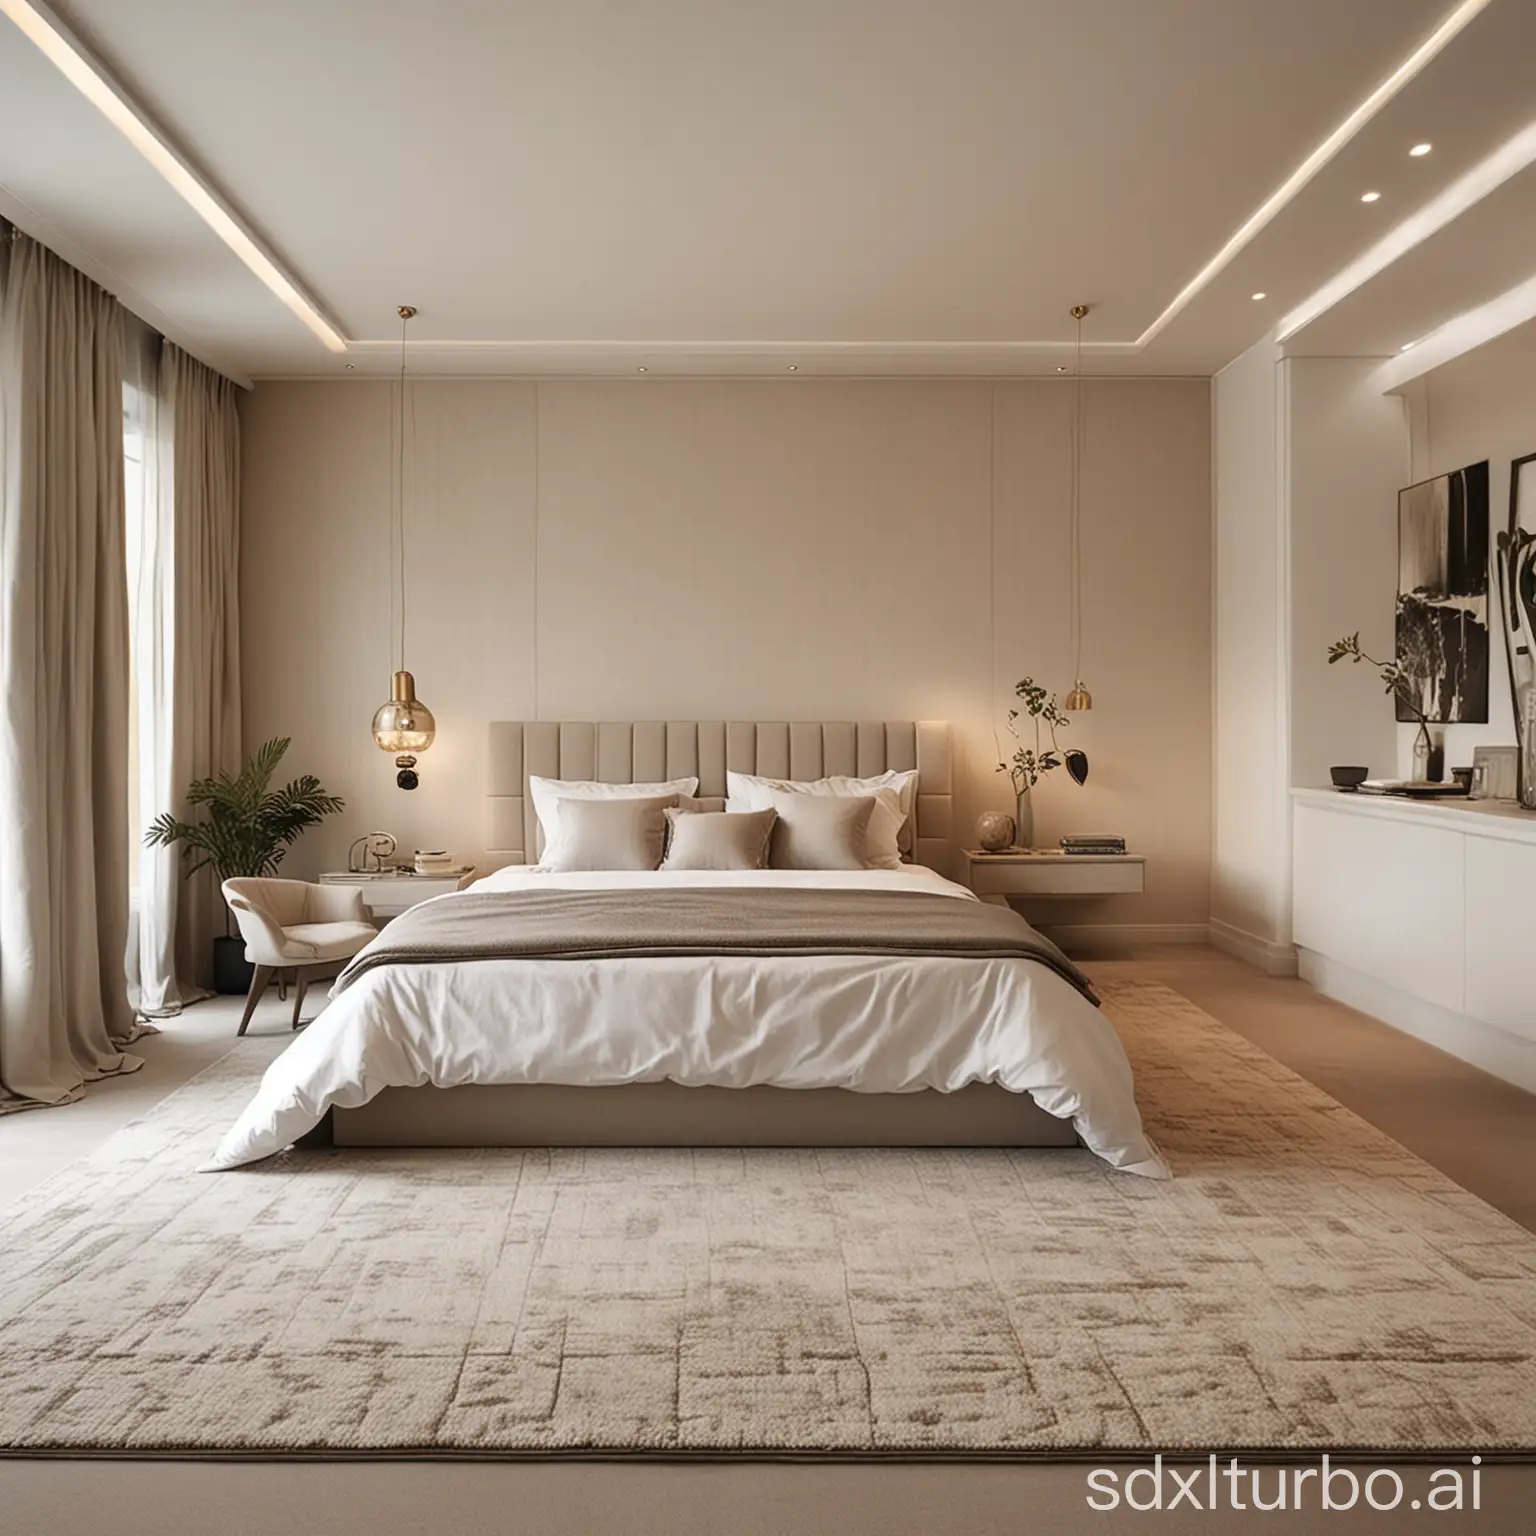 Contemporary-Cozy-Bedroom-with-Spacious-Area-Rug